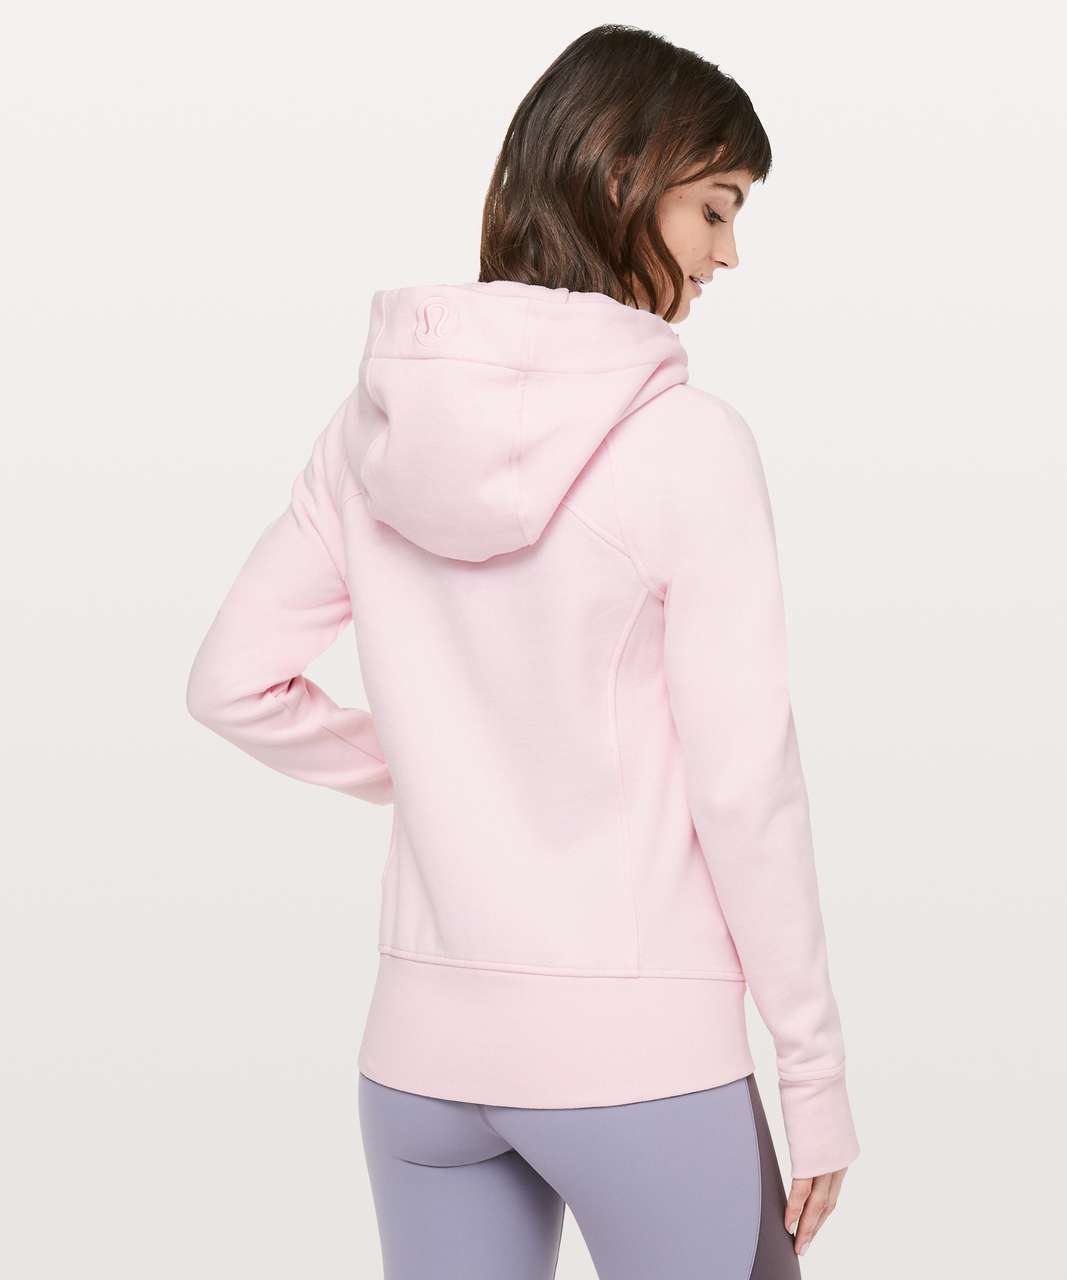 Lululemon Scuba Hoodie Stretch in Bon Bon pink- 6  Lululemon scuba hoodie,  Hoodies, Sweatshirt tops